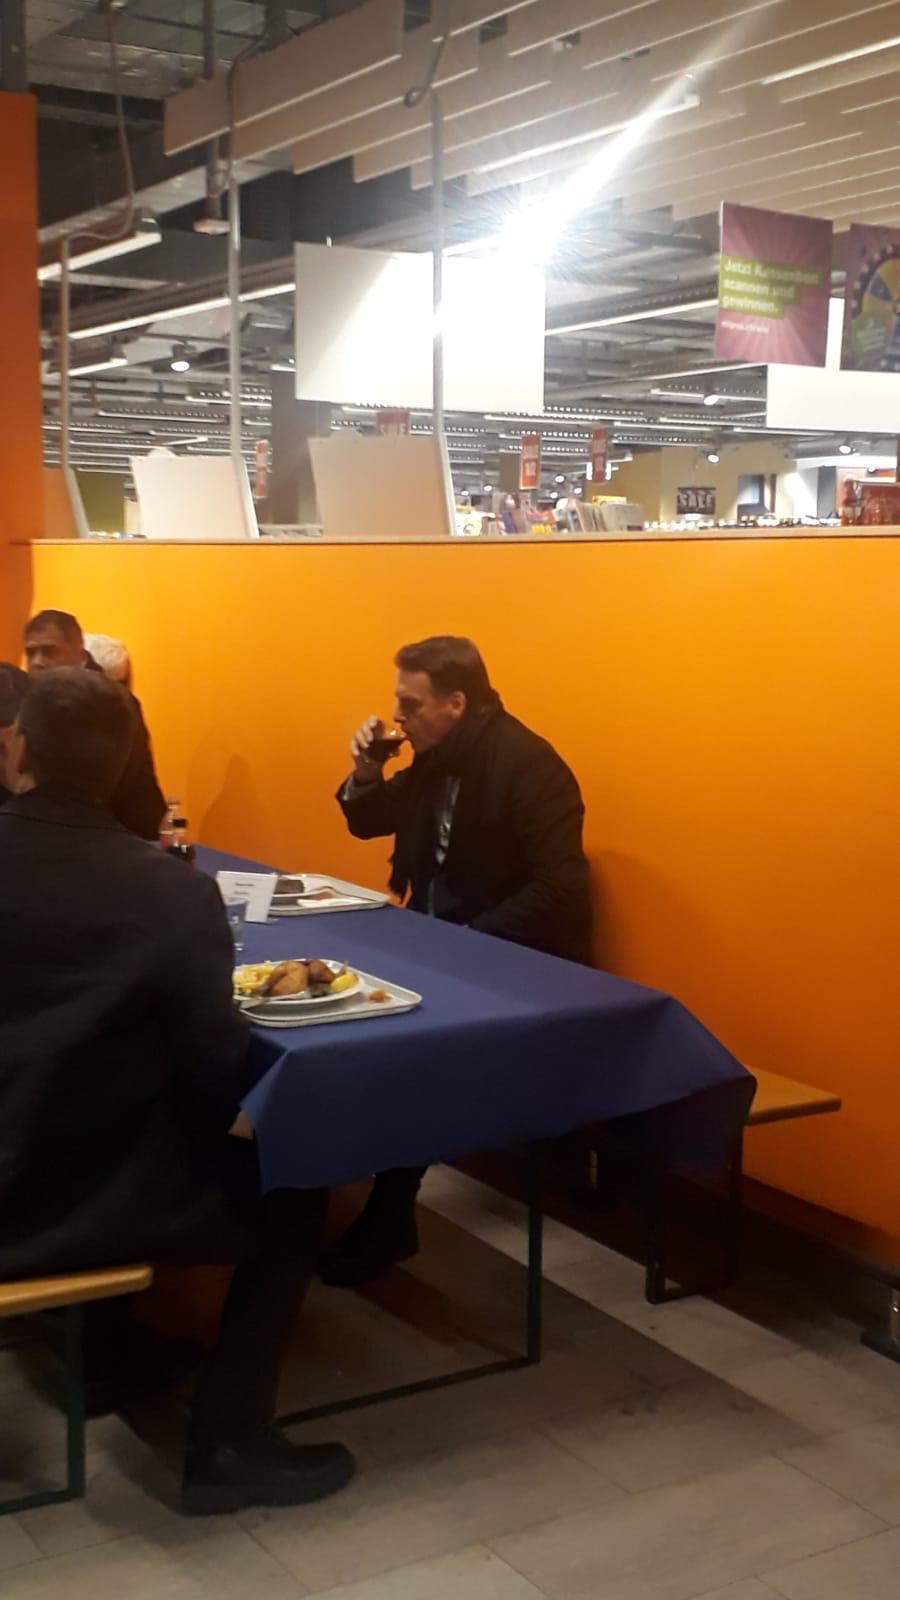 Bolsonaro almoçando sozinho no restaurante Migros